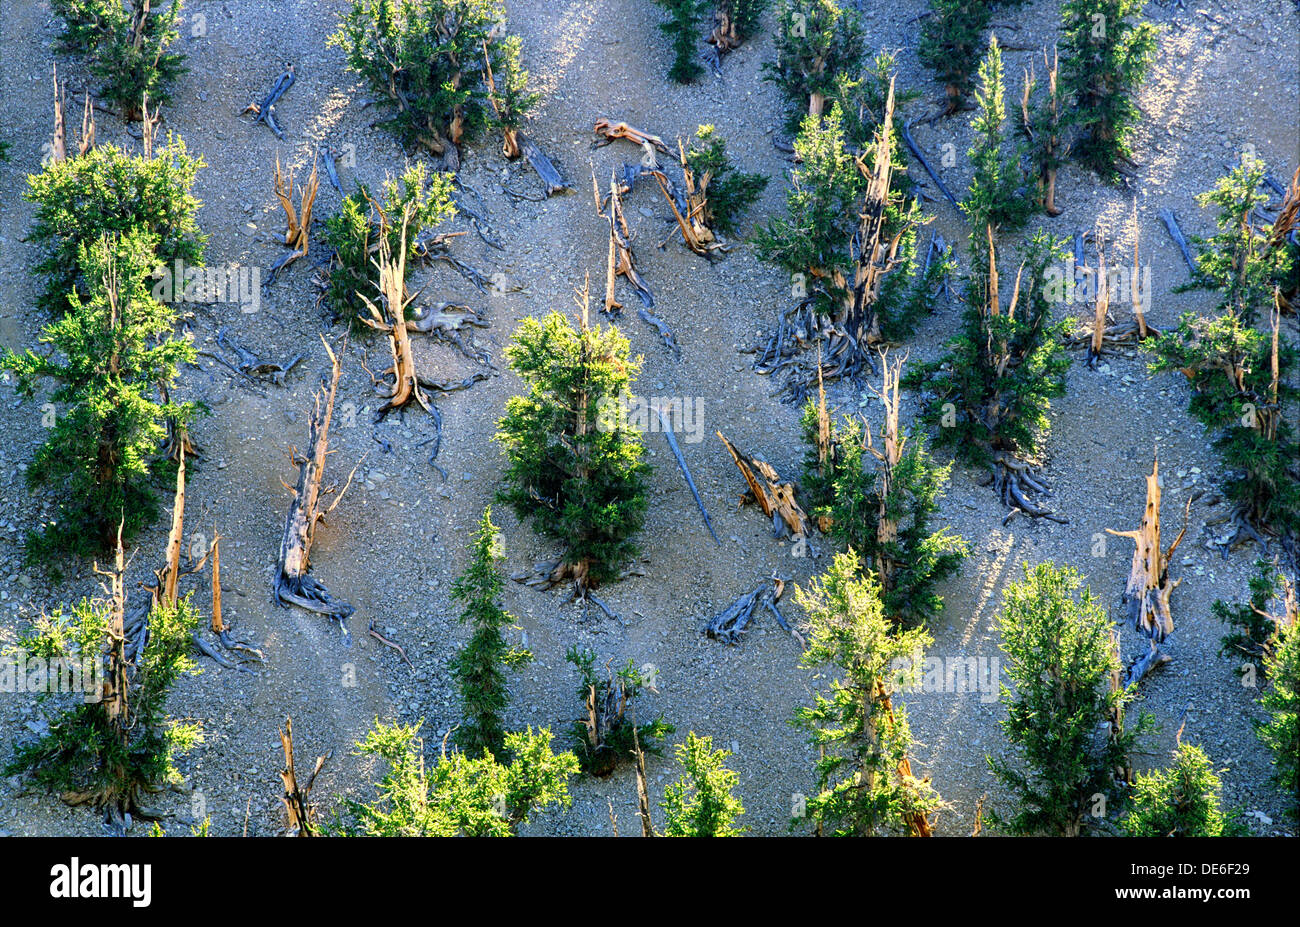 Bristlecone pine trees dans Inyo National Forest Park, près de Big Pine, Californie, USA. L'un des plus anciens organismes vivants sur Terre Banque D'Images